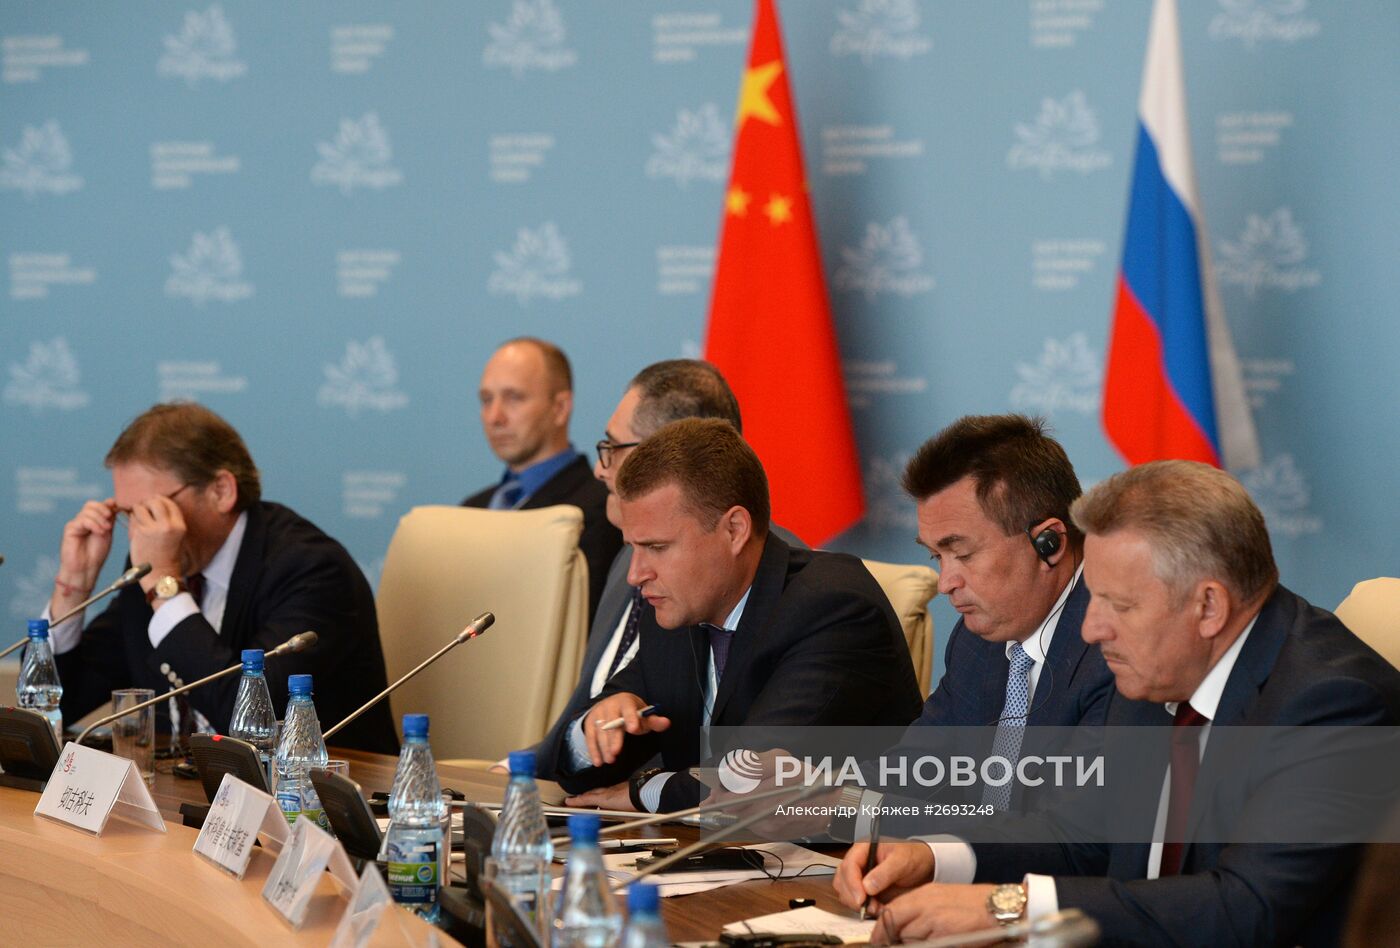 Ключевая сессия "Будущее Азиатско-Тихоокеанского региона "Страновой диалог Россия - Китай"